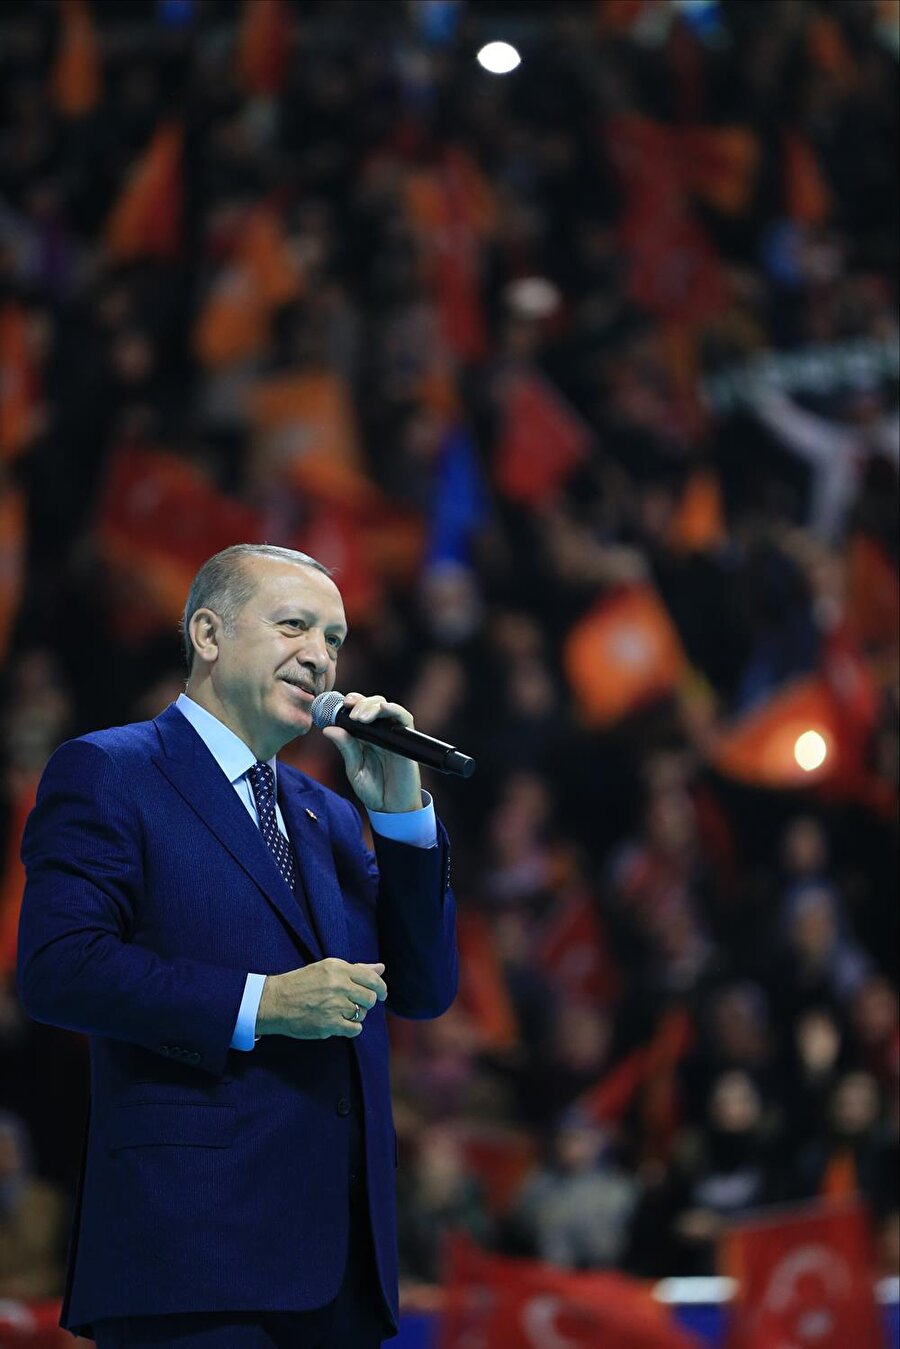 Cumhurbaşkanı Erdoğan: Karşımıza kim çıkarsa çıksın ezer geçeriz

                                    Cumhurbaşkanı Erdoğan, Zeytin Dalı Harekatına ilişkin, "Çok kısa sürede tamamlanacak" dedi. Cumhurbaşkanı HDP'nin çağrısına ilişkin, "Meydanlara çıkma yanlışına düşenler olursa bedelini çok ağır öderler. Karşımıza kim çıkarsa çıksın ezer geçeriz" açıklamasını yaptı.
                                